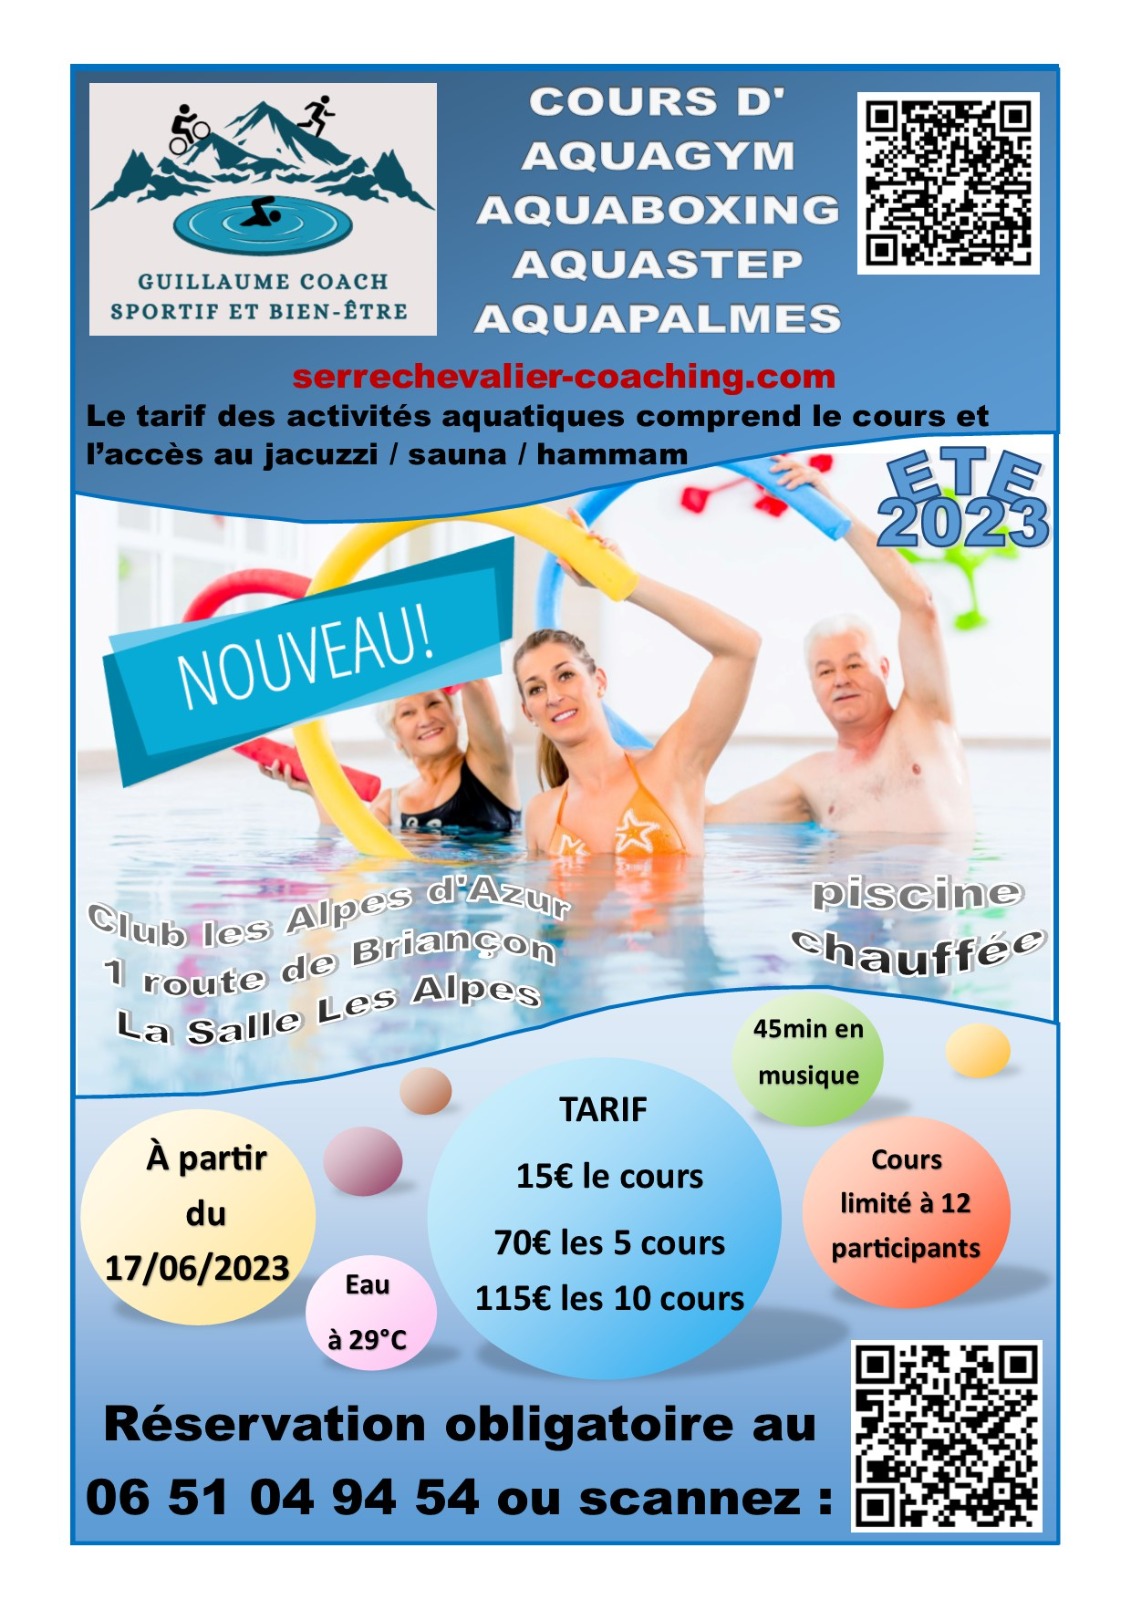 Affiche proposant des cours d'aquagym à Serre-Chevalier avec informations et horaires des cours